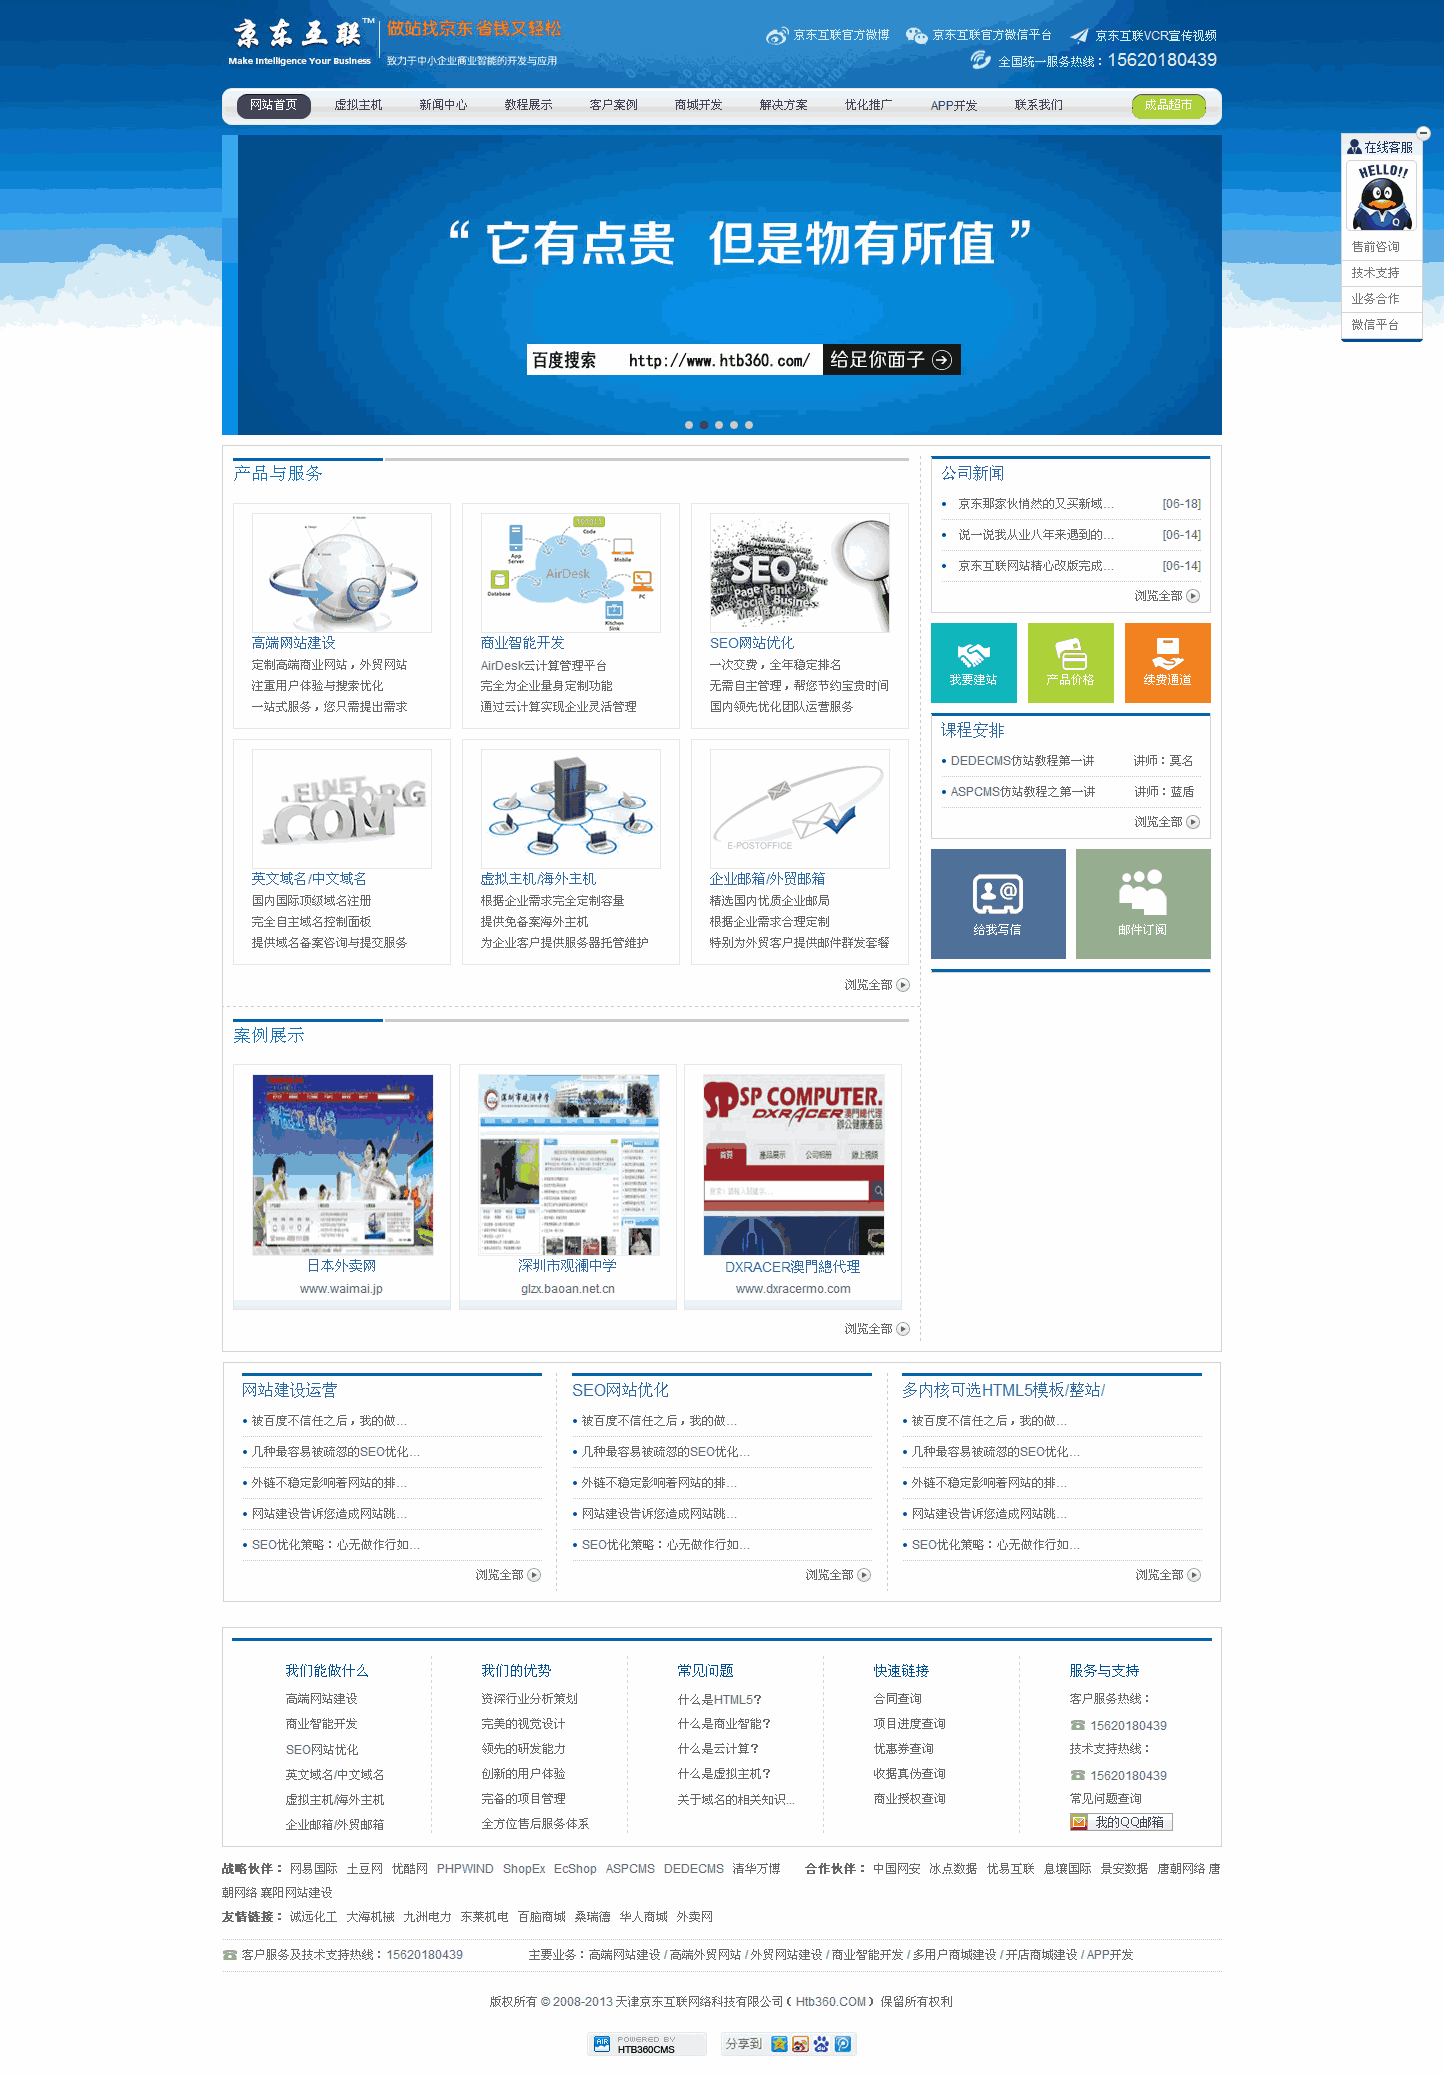 蓝色的网络公司_网络公司网站制作_网站建设模板演示图